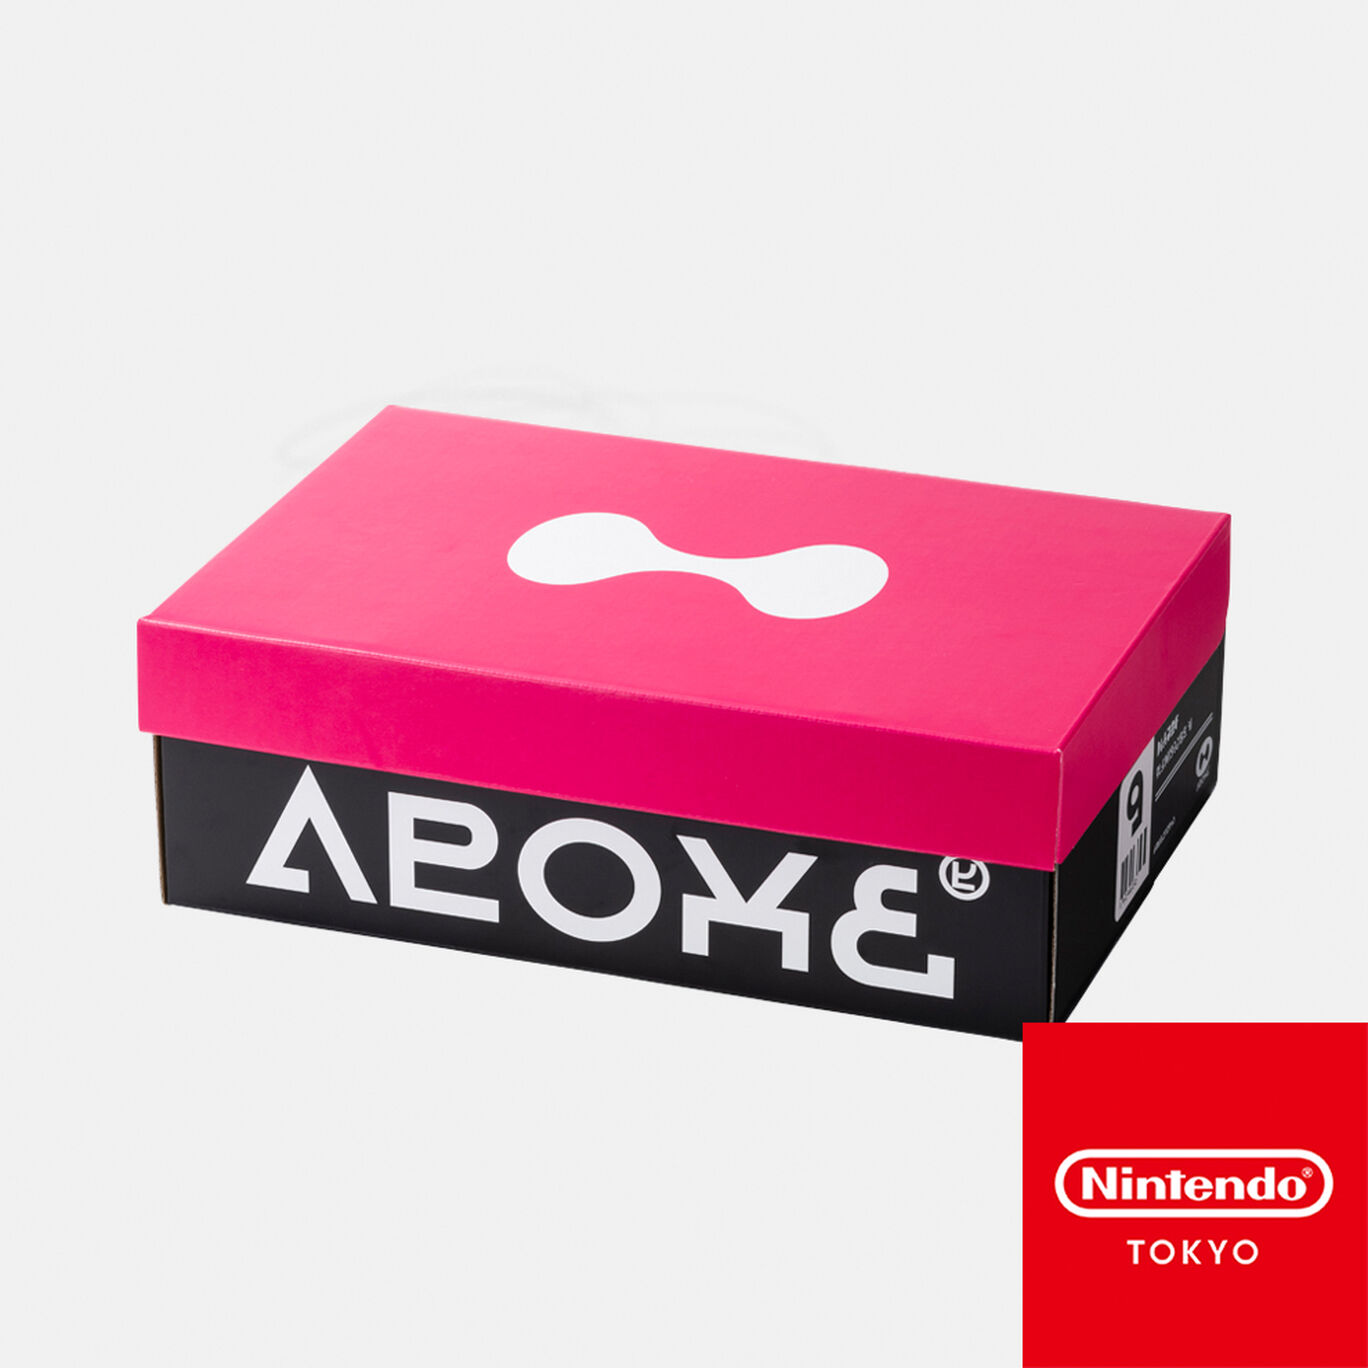 シューズボックス風収納BOX CROSSING SPLATOON C【Nintendo TOKYO/OSAKA取り扱い商品】